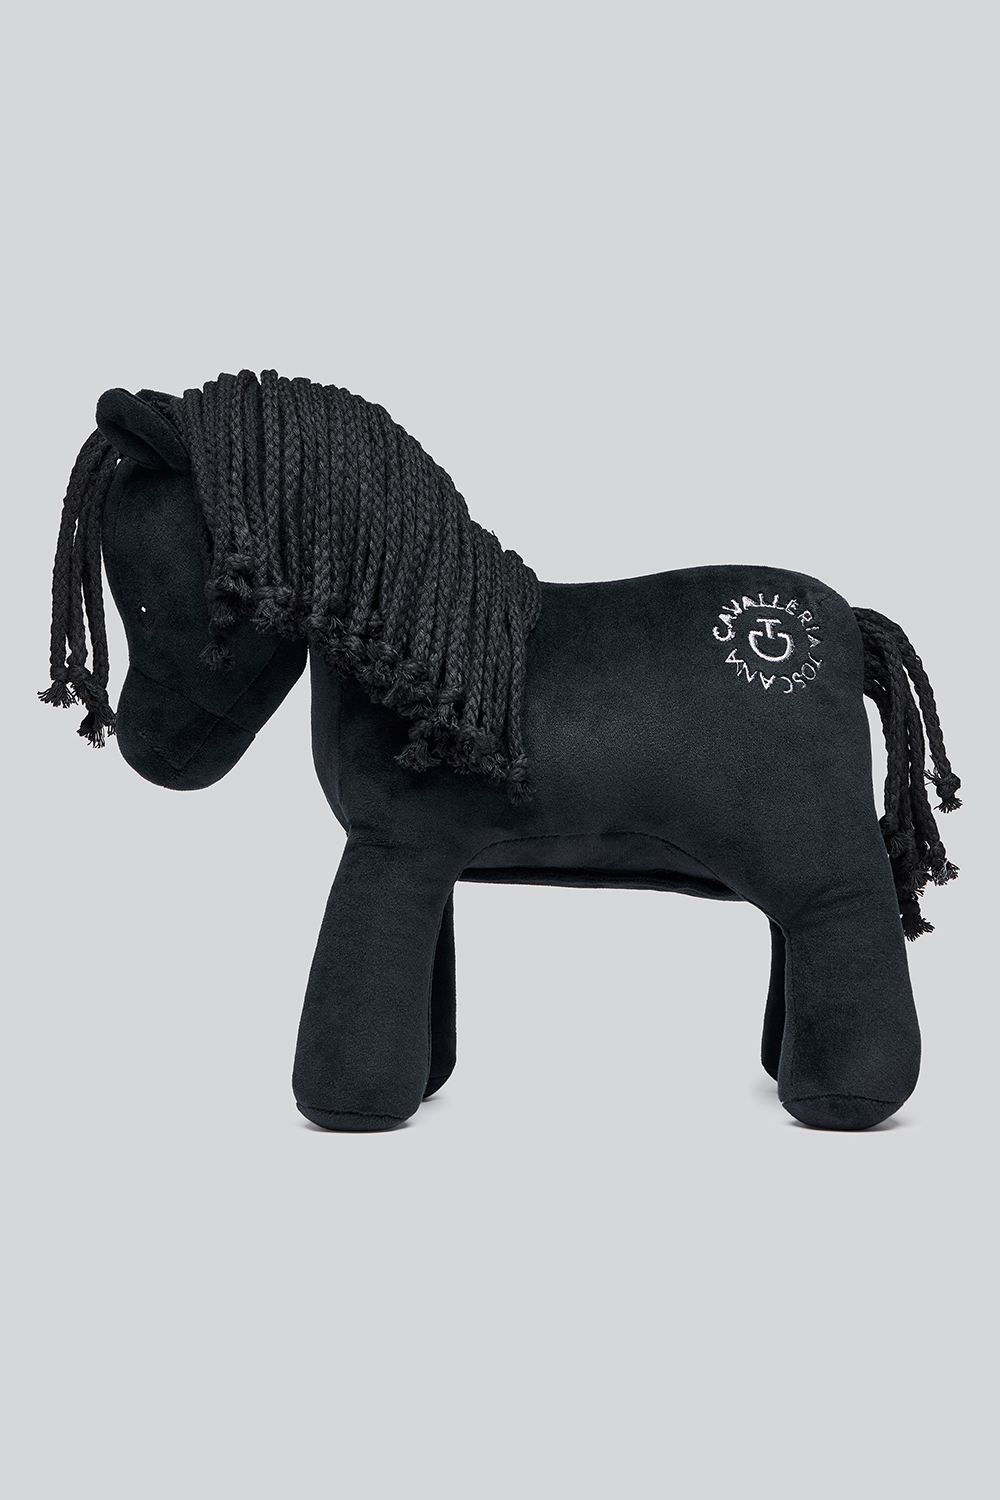 CAVALLERIA TOSCANA Relax Horse Toy Kuscheltier Pferd - black - Stück - 1